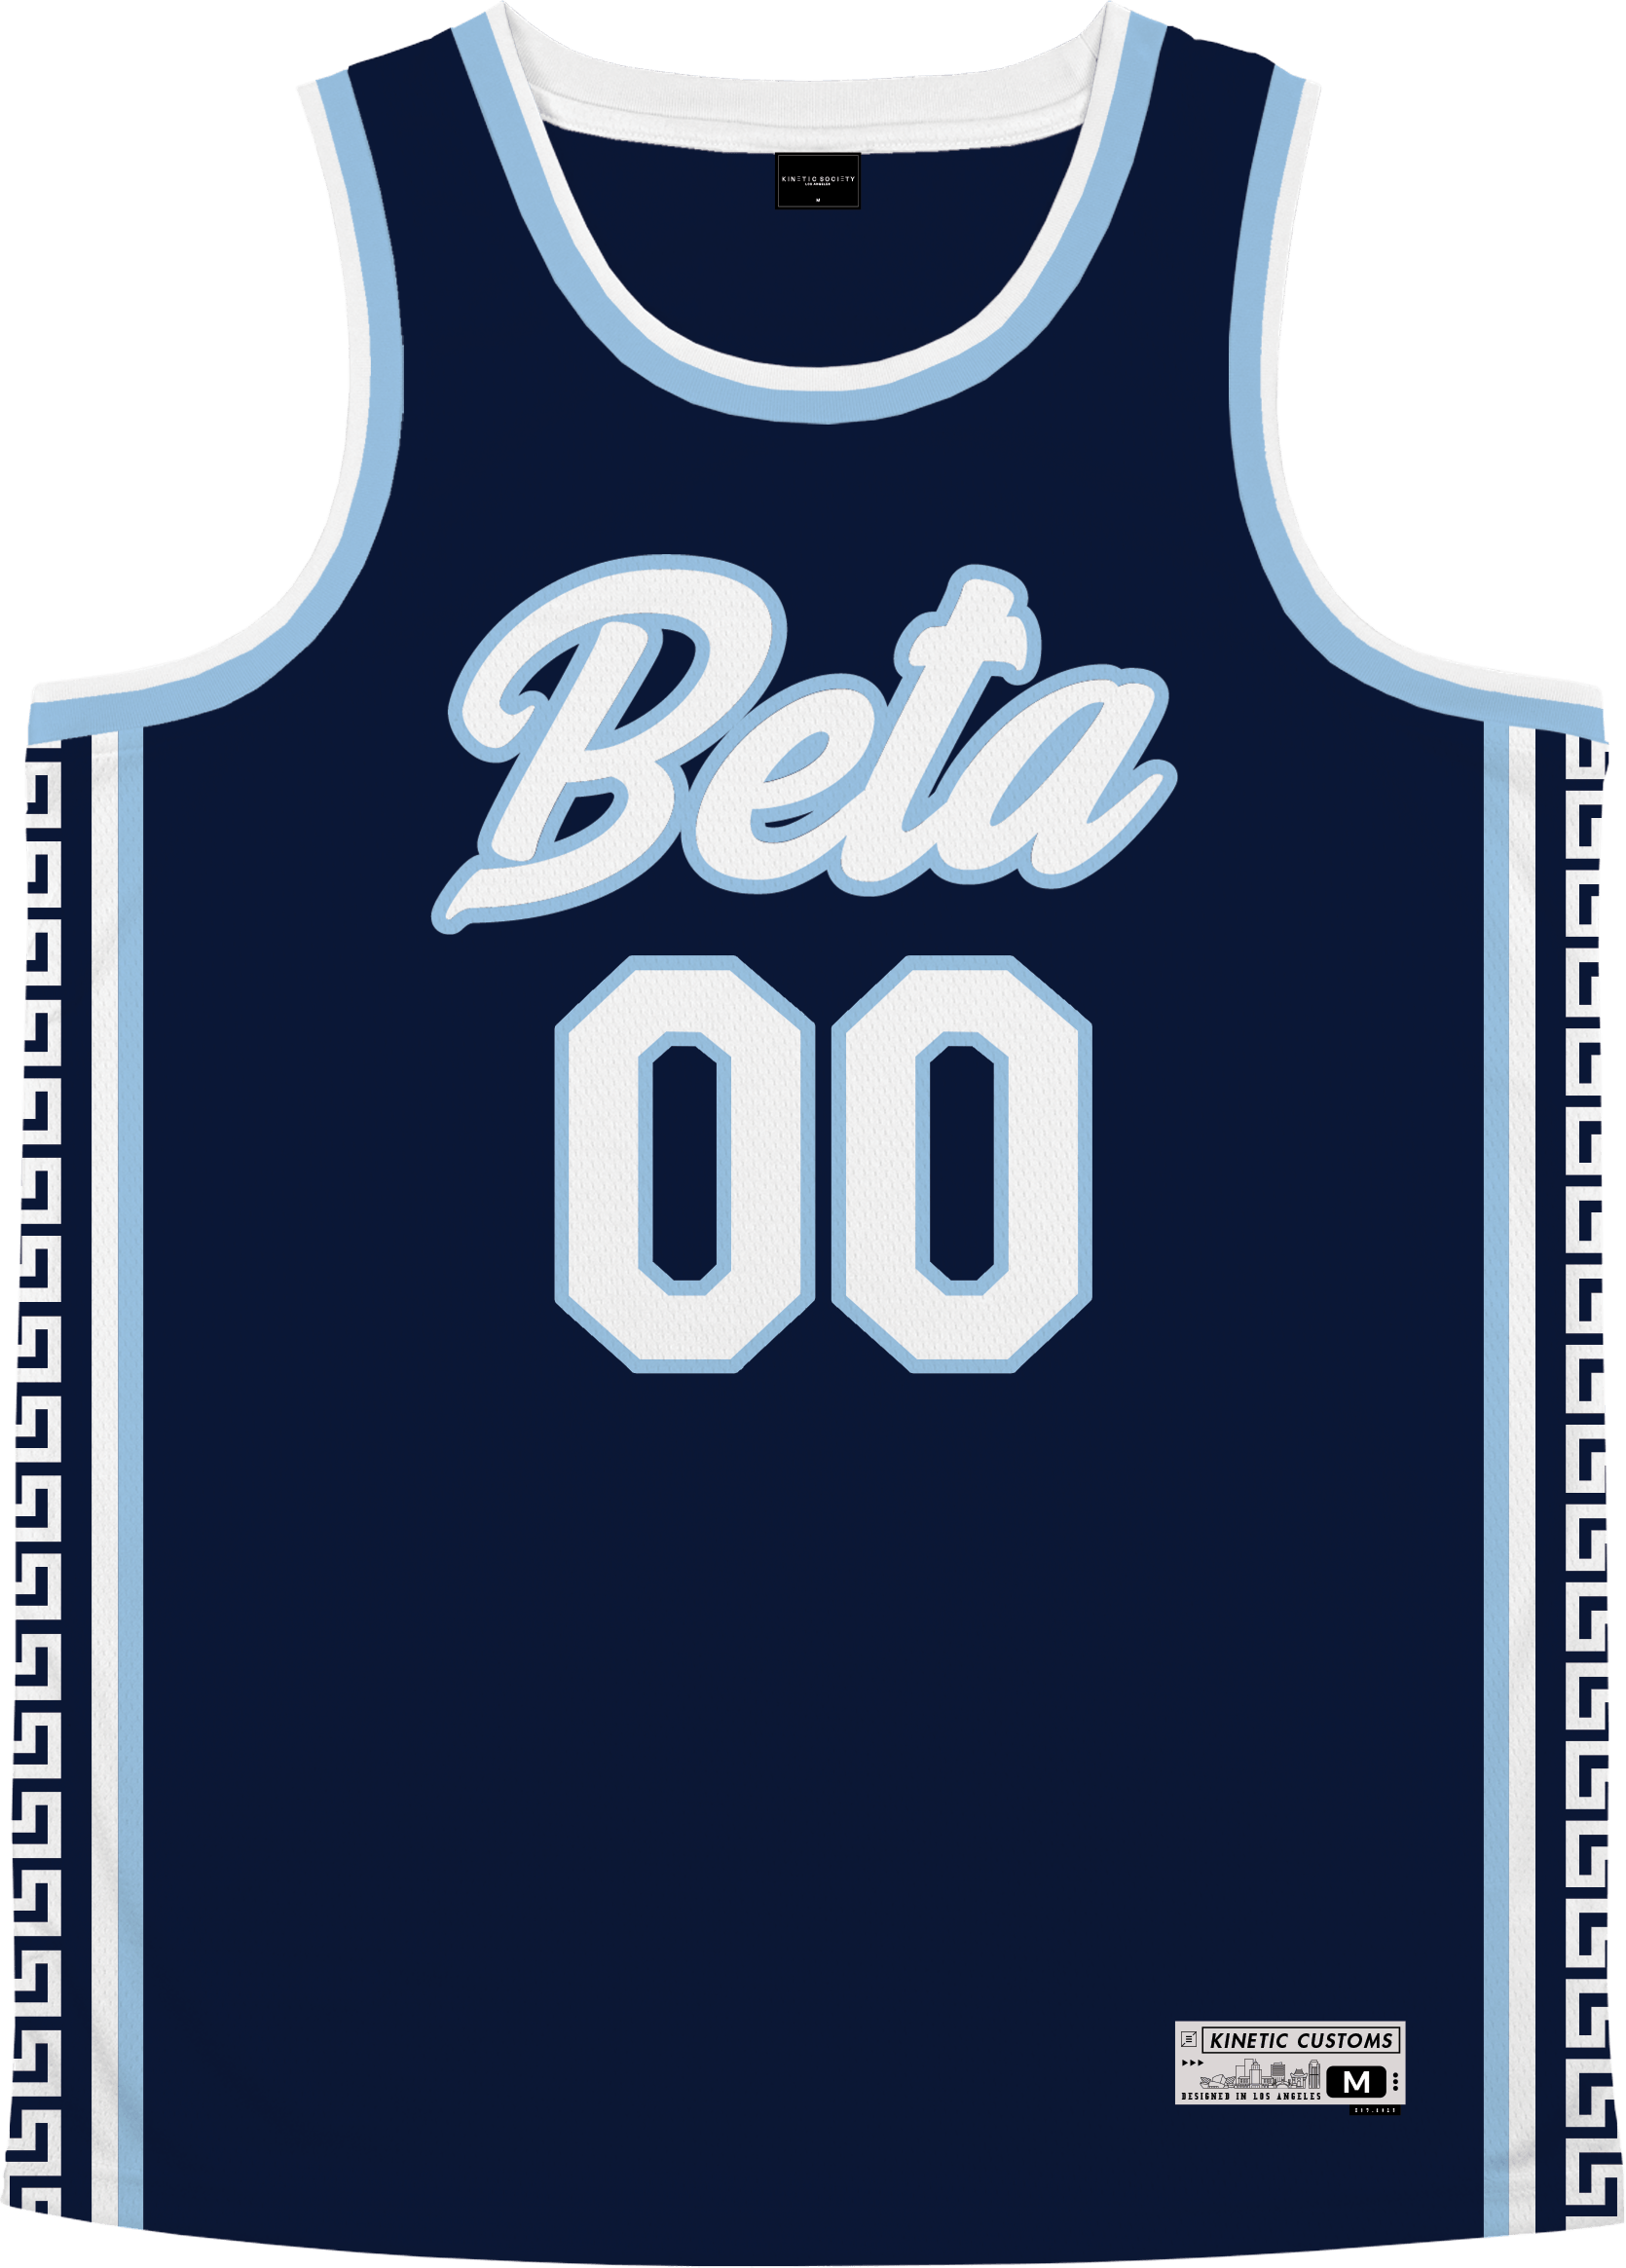 Beta Theta Pi - Templar Basketball Jersey - Kinetic Society